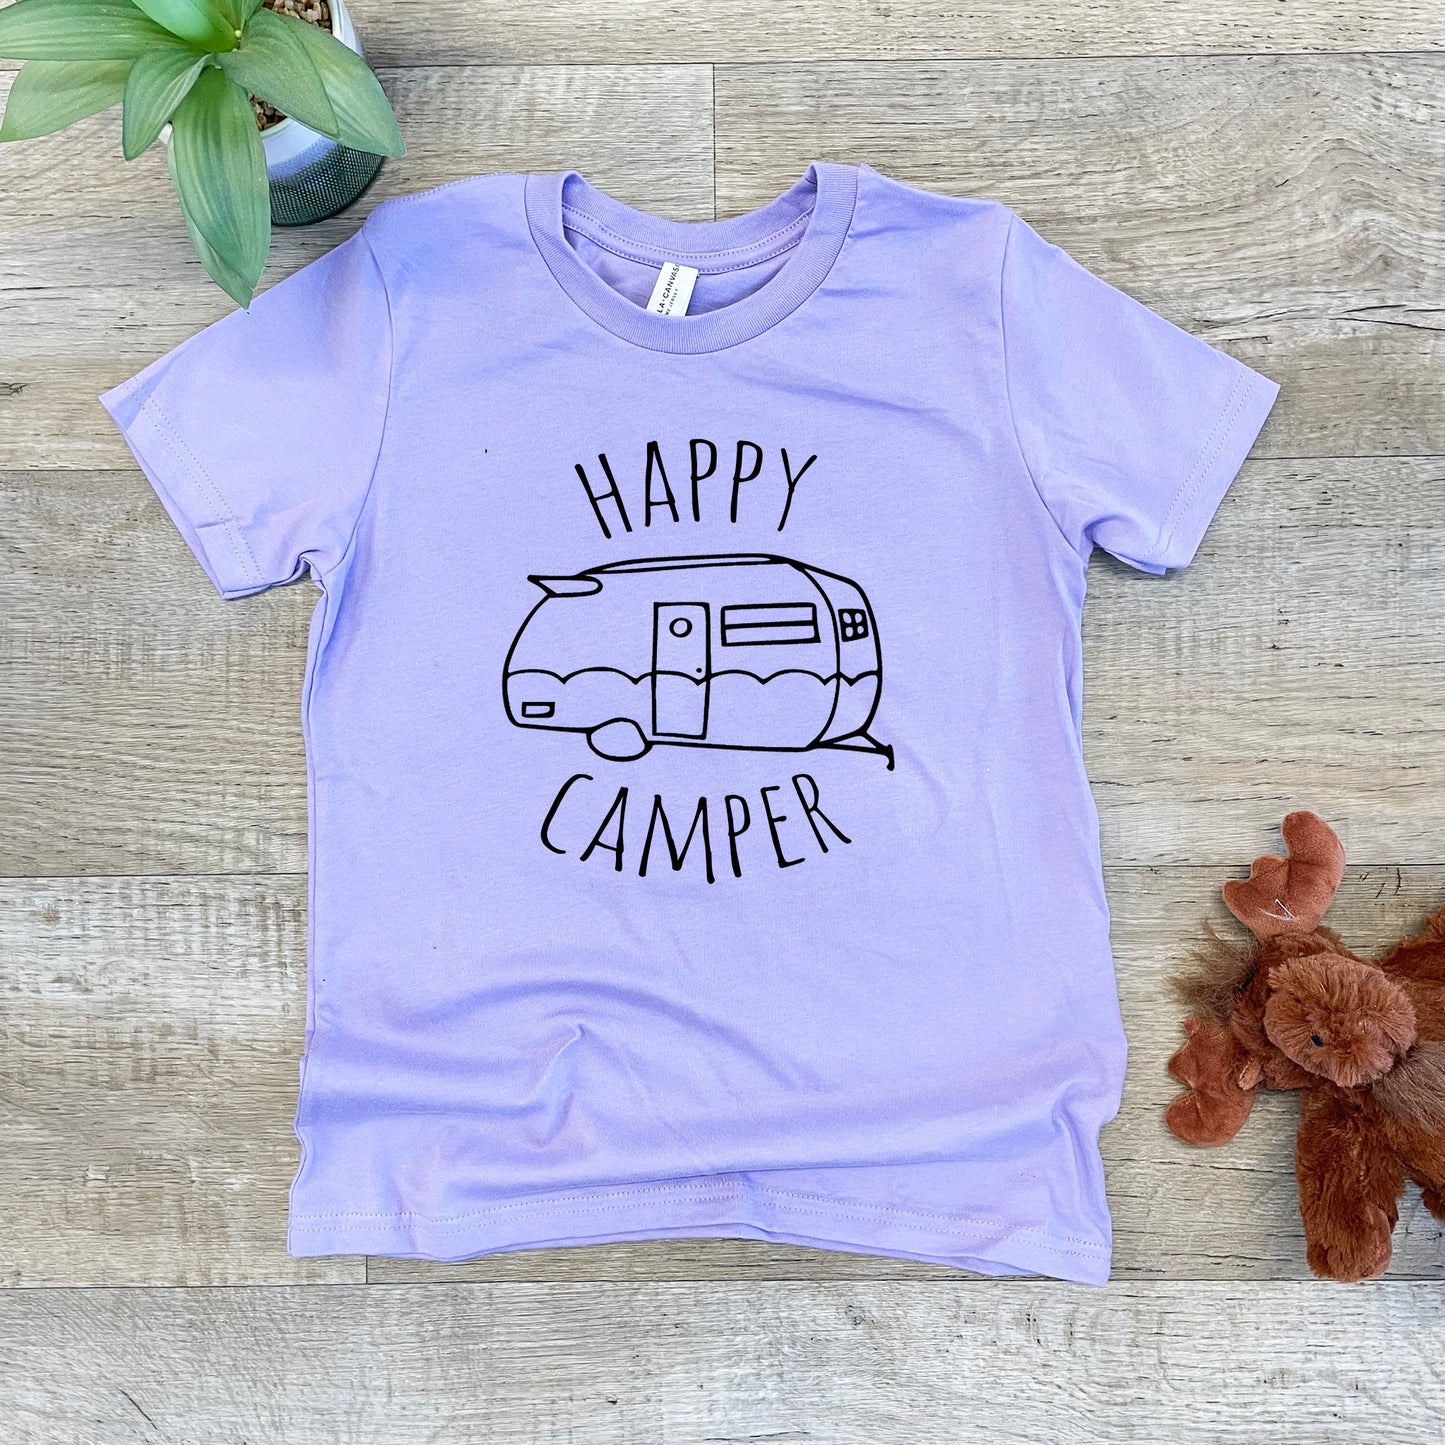 Happy Camper - Kid's Tee - Columbia Blue or Lavender